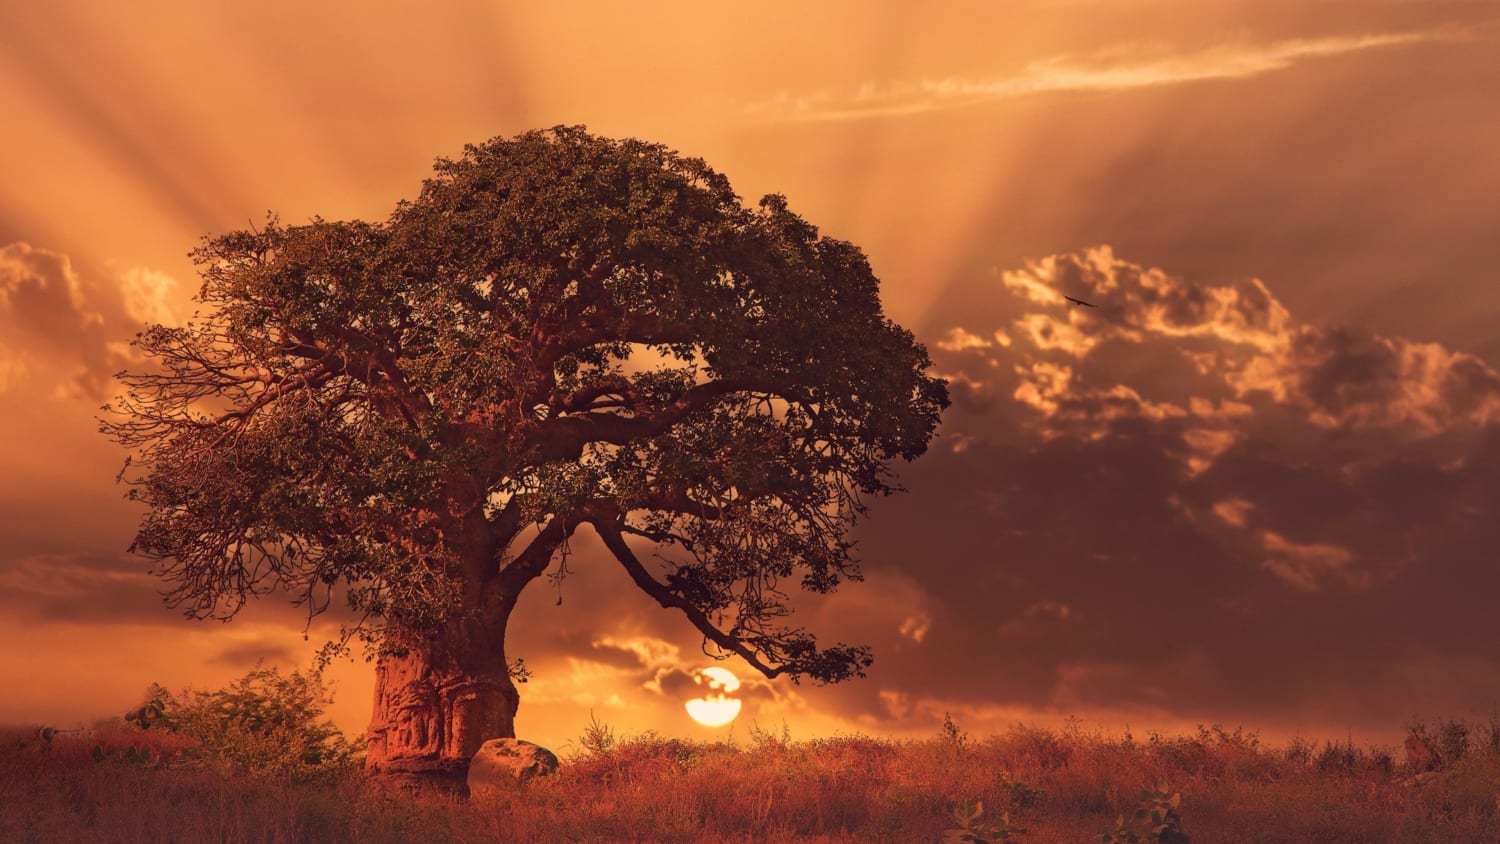 Baobab tree at sunset